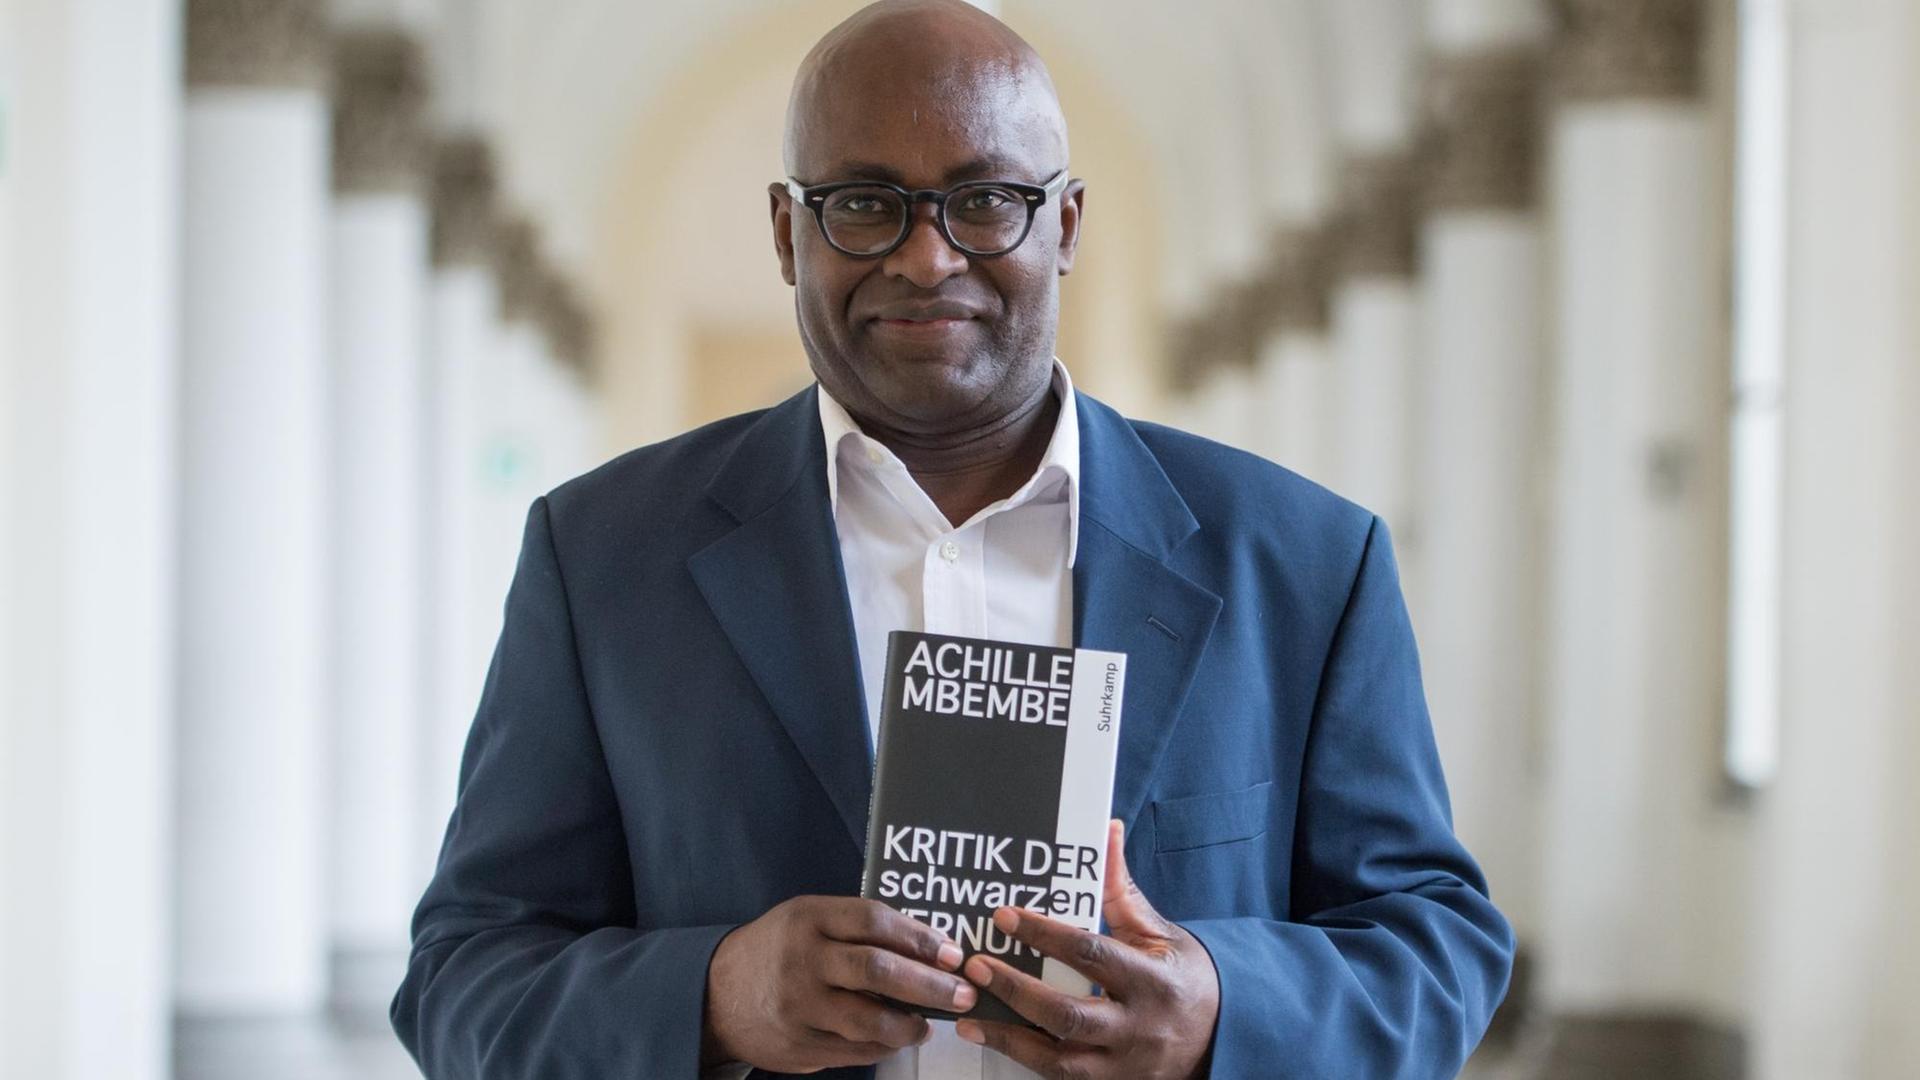 Der Schriftsteller Achille Mbembe hält in der Ludwig-Maximilians-Universität in München sein Buch "Kritik der schwarzen Vernunft"